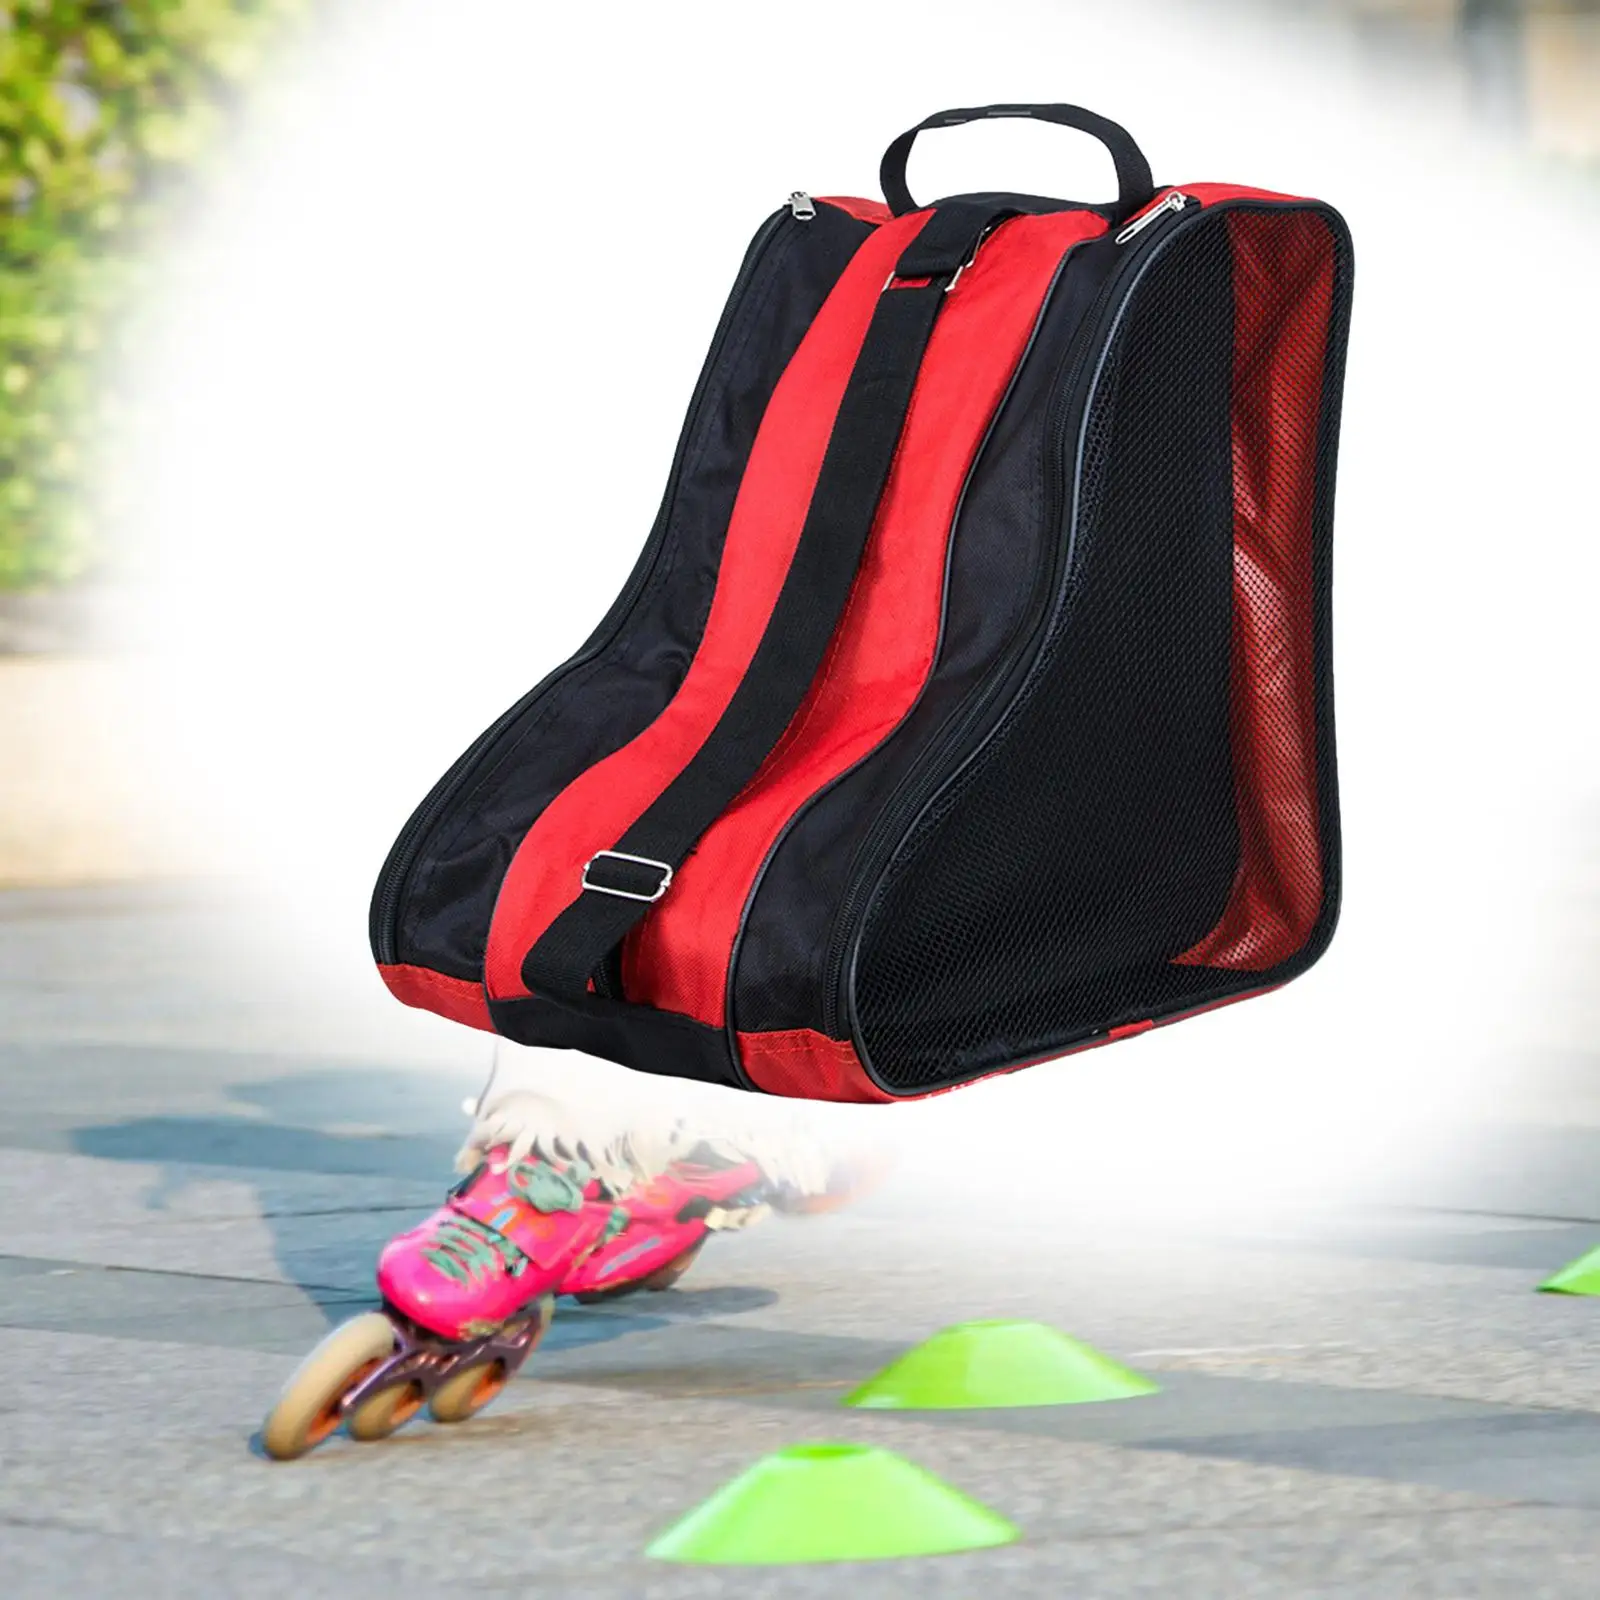 Roller Skate Bag Skate Accessories with Adjustable Shoulder Strap Skating Shoes Storage Bag for Quad Skates Figure Skates